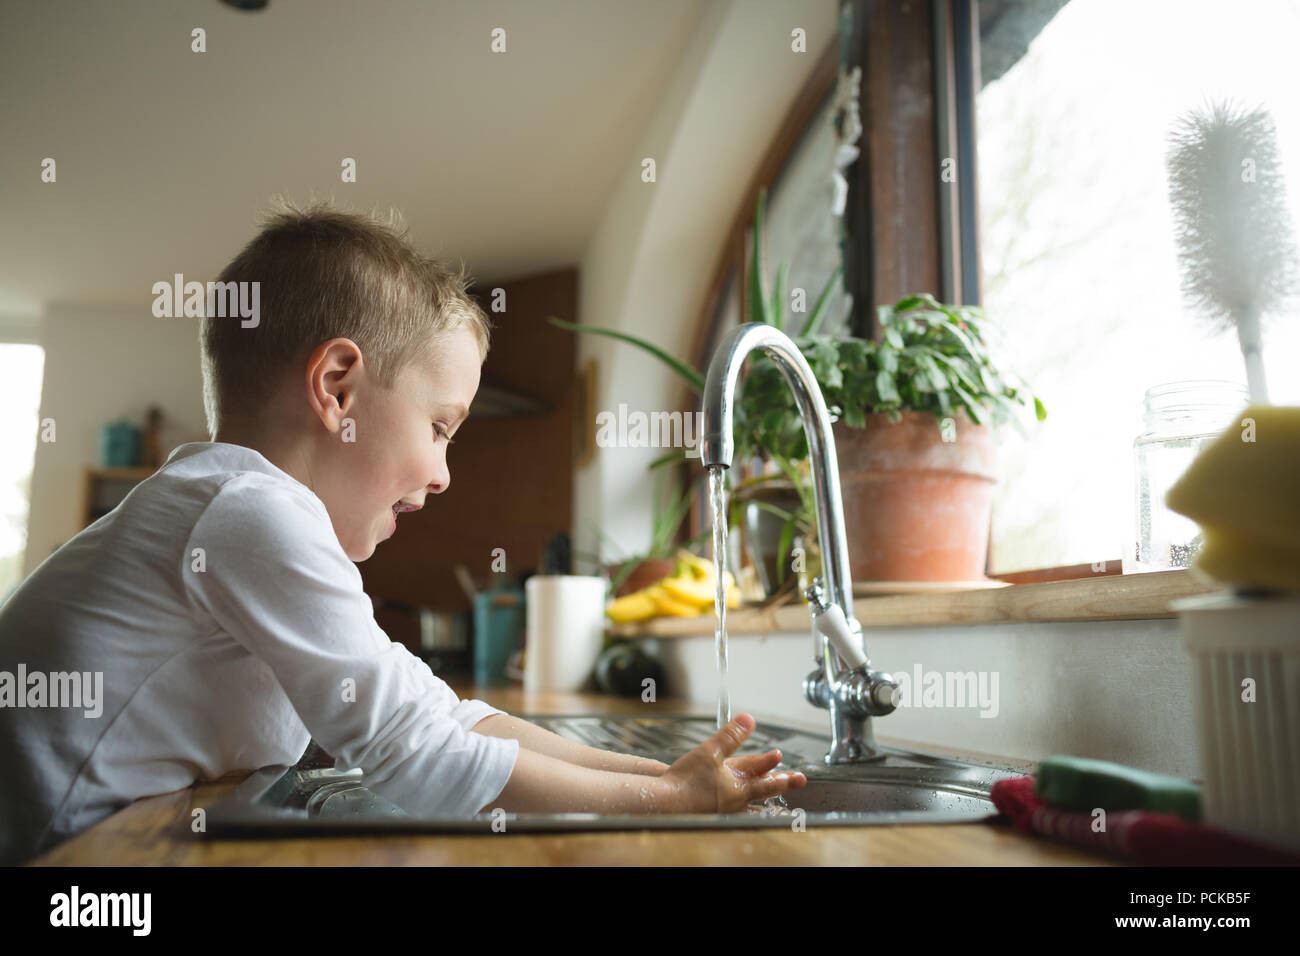 Boy washing hands on kitchen sink Stock Photo